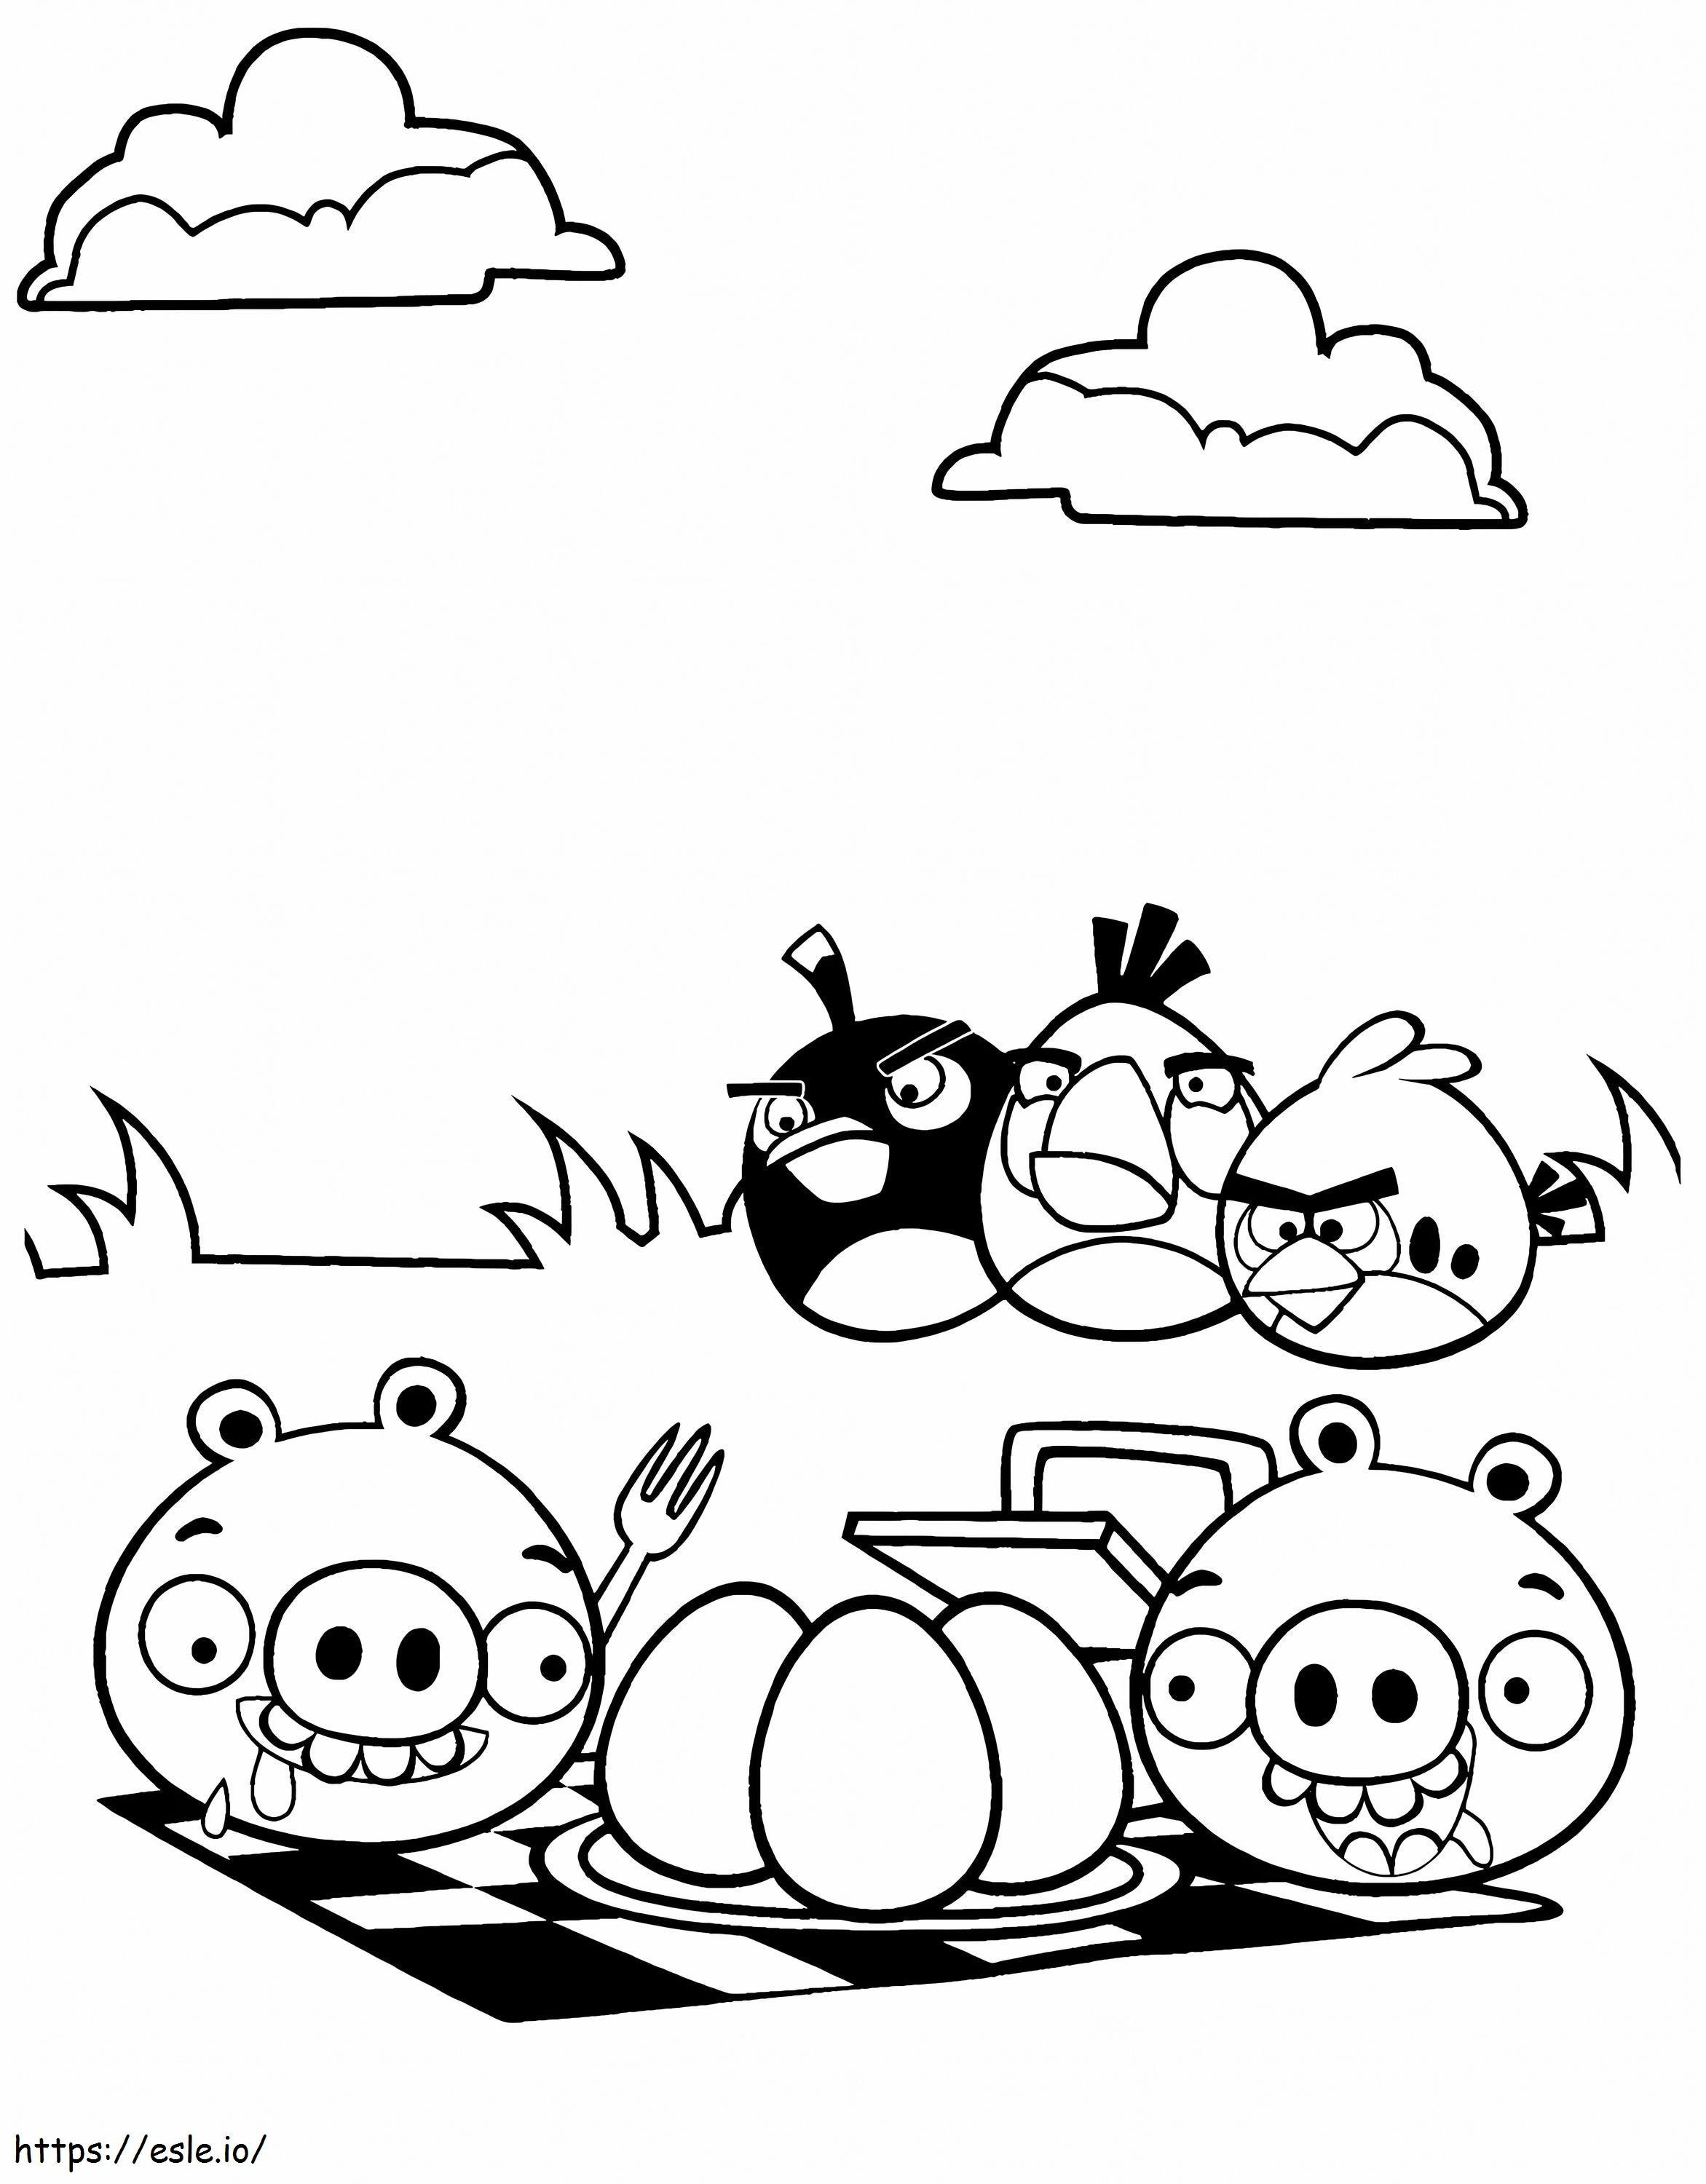 1551685589 Uimitor Angry Birds Porci răi Porc S Pagina Fortificații imprimabilă gratuit de colorat